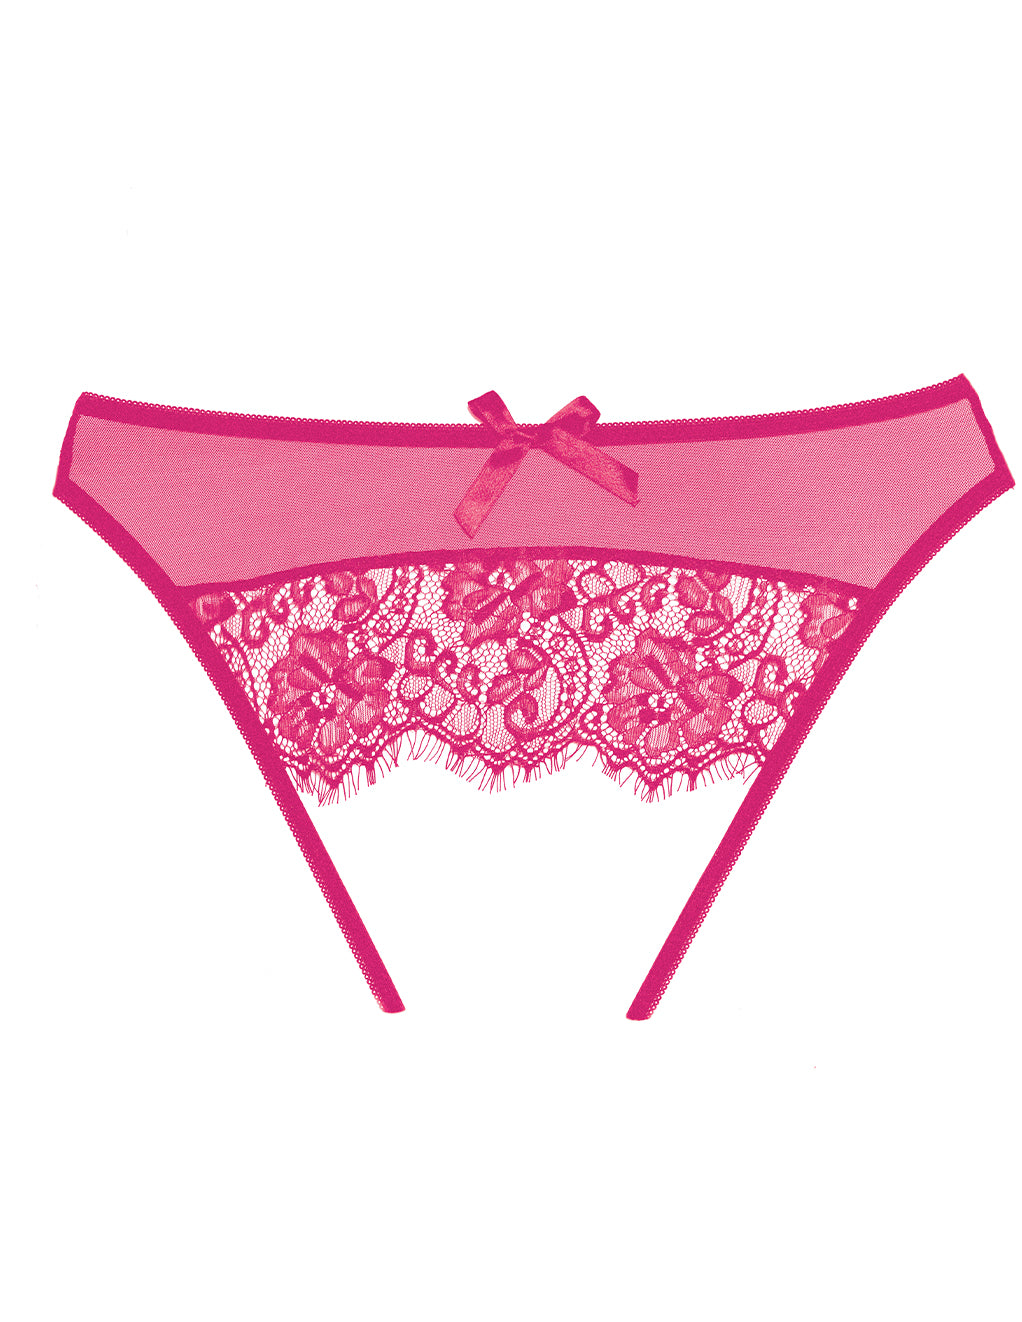 Allure Lingerie Sheer Eyelash Lace Open Back Panty- Hot Pink- Back of panty